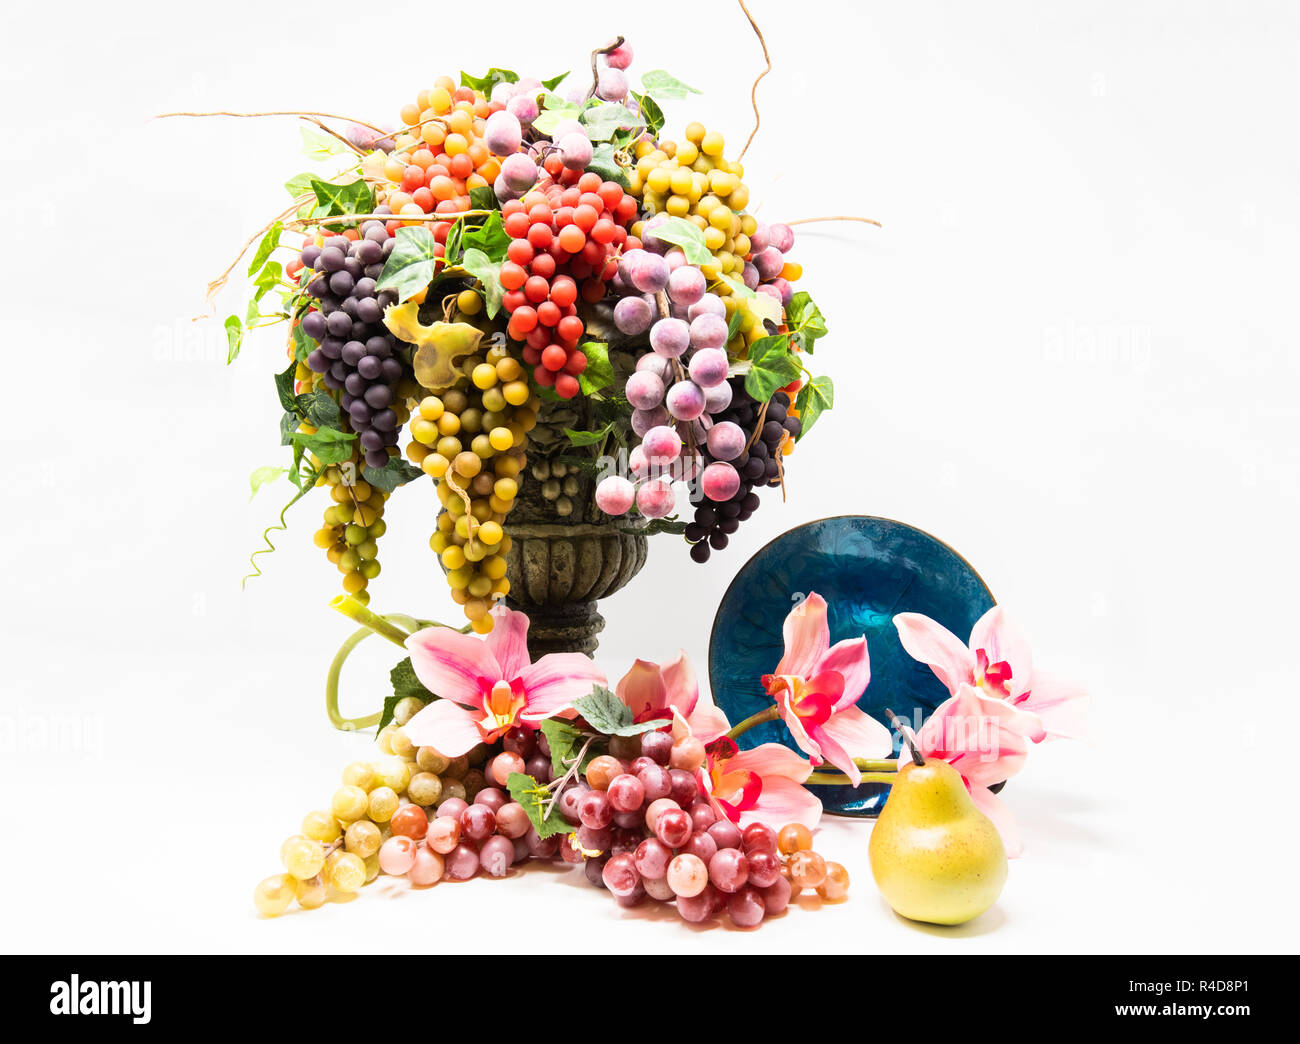 Alto contraste de color sigue la vida de uva en un florero delante de flores, una pera y una placa de vidrio. Foto de stock